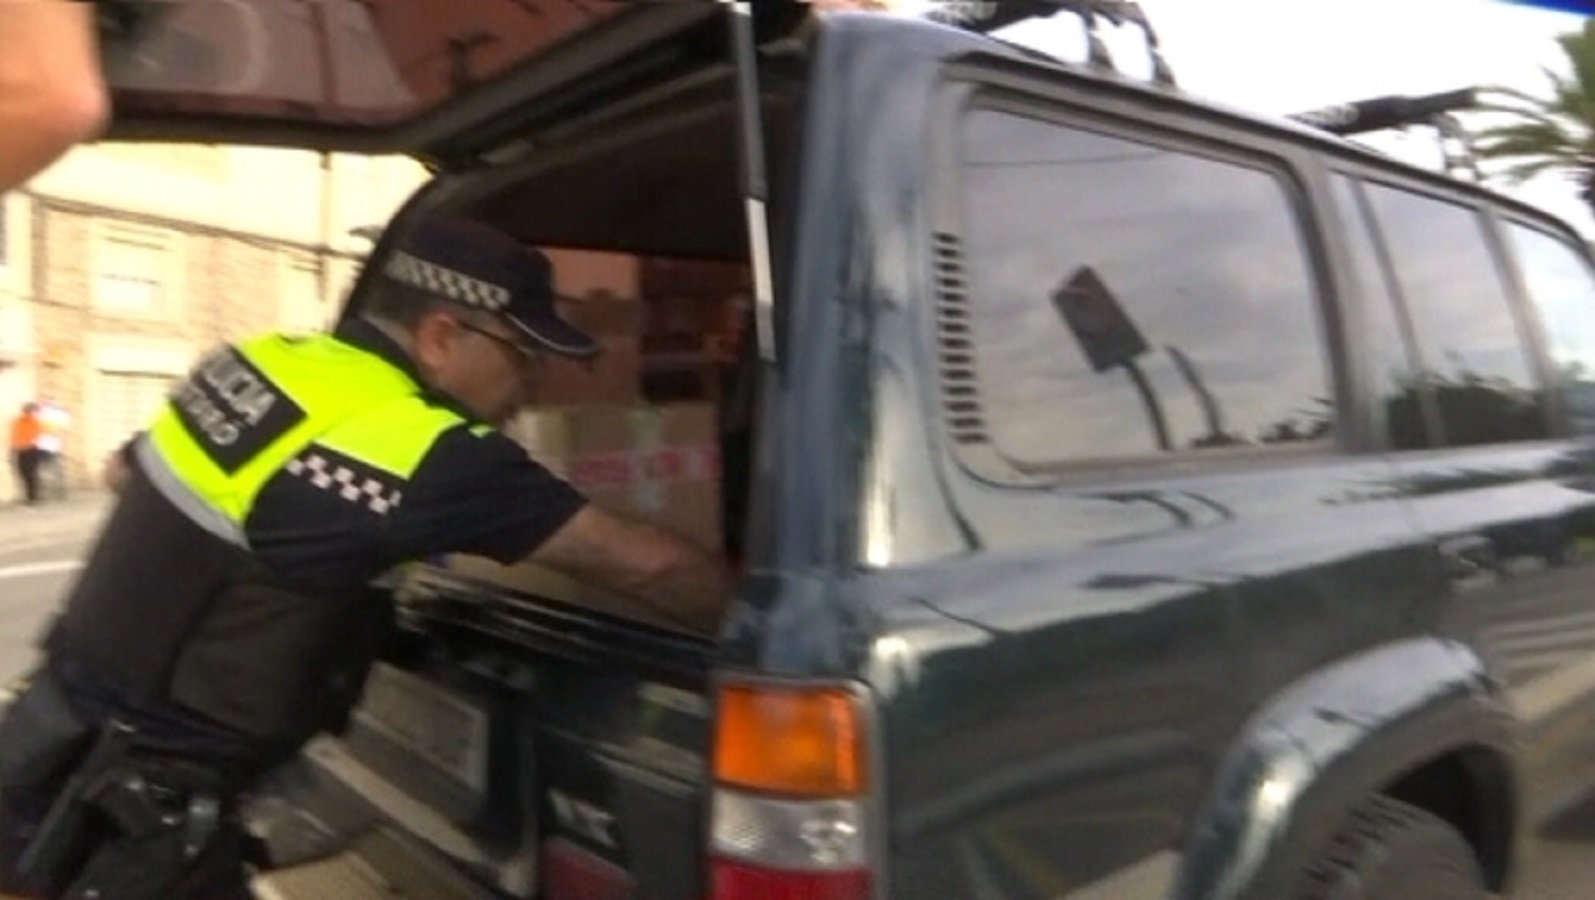 La policia de Mataró buscaba "objetos contundentes" en los coches